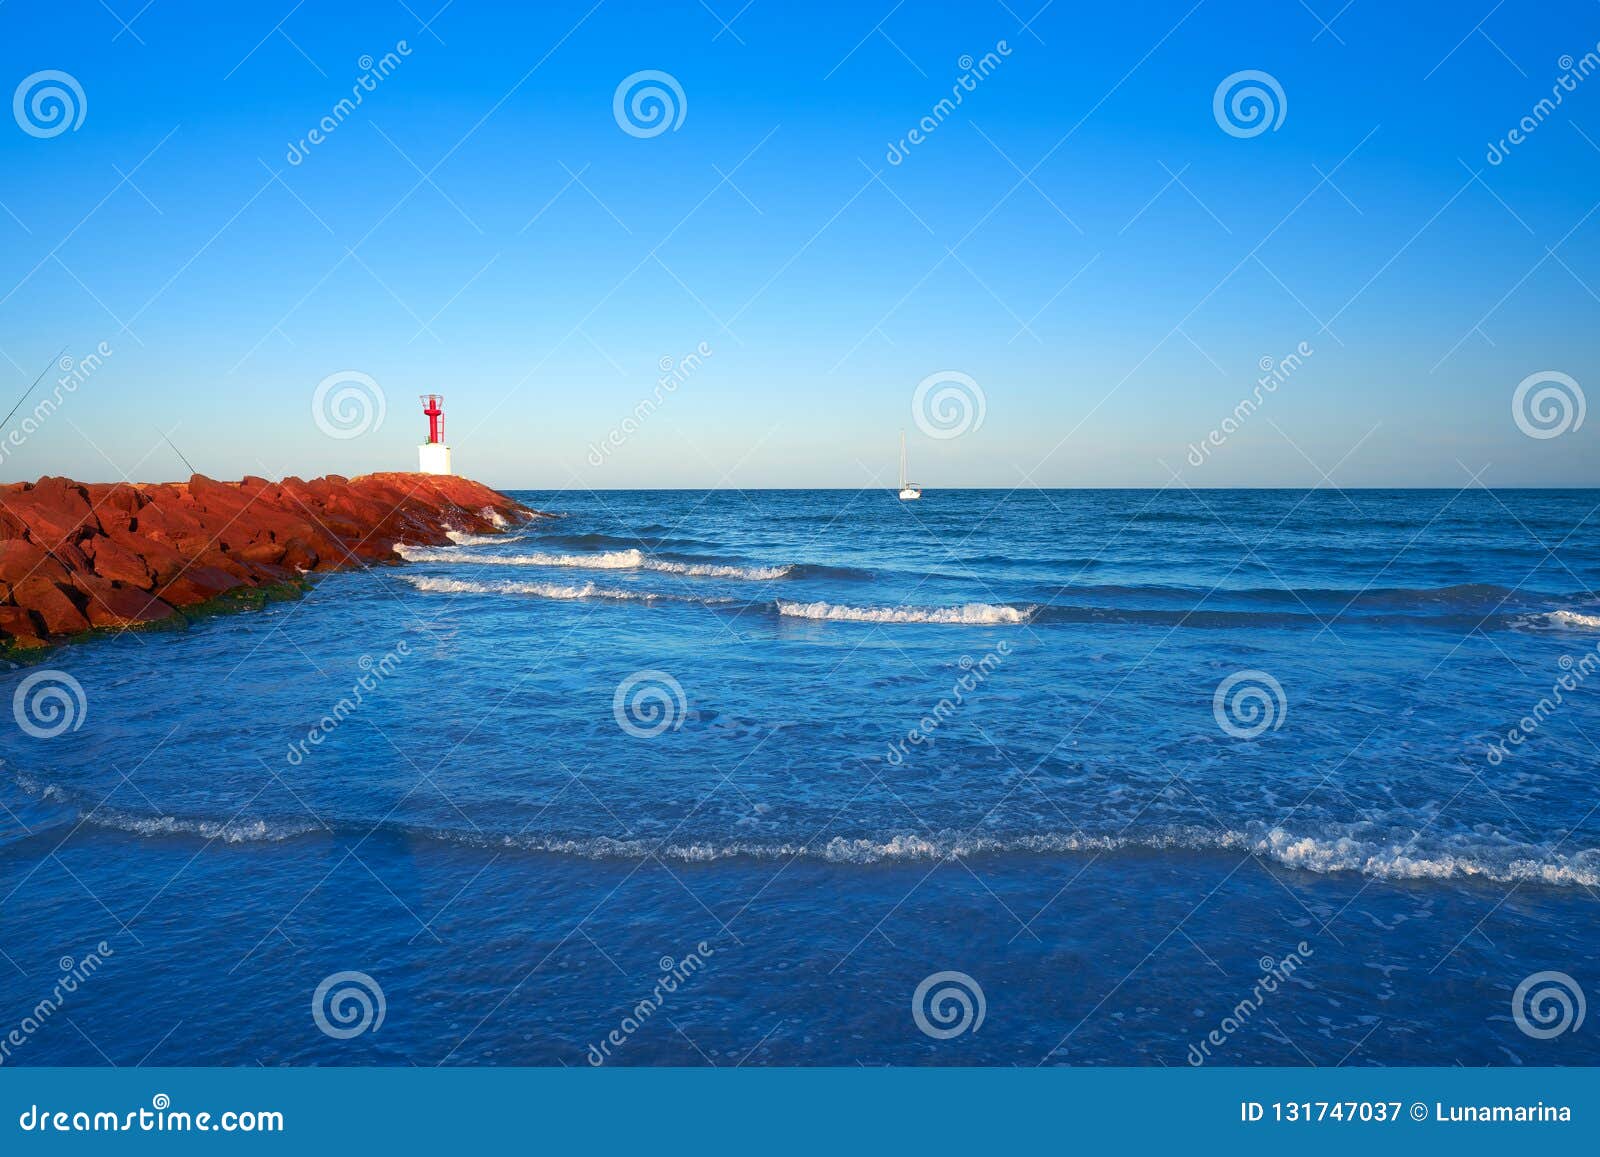 pobla puebla de farnals beach in valencia of spain